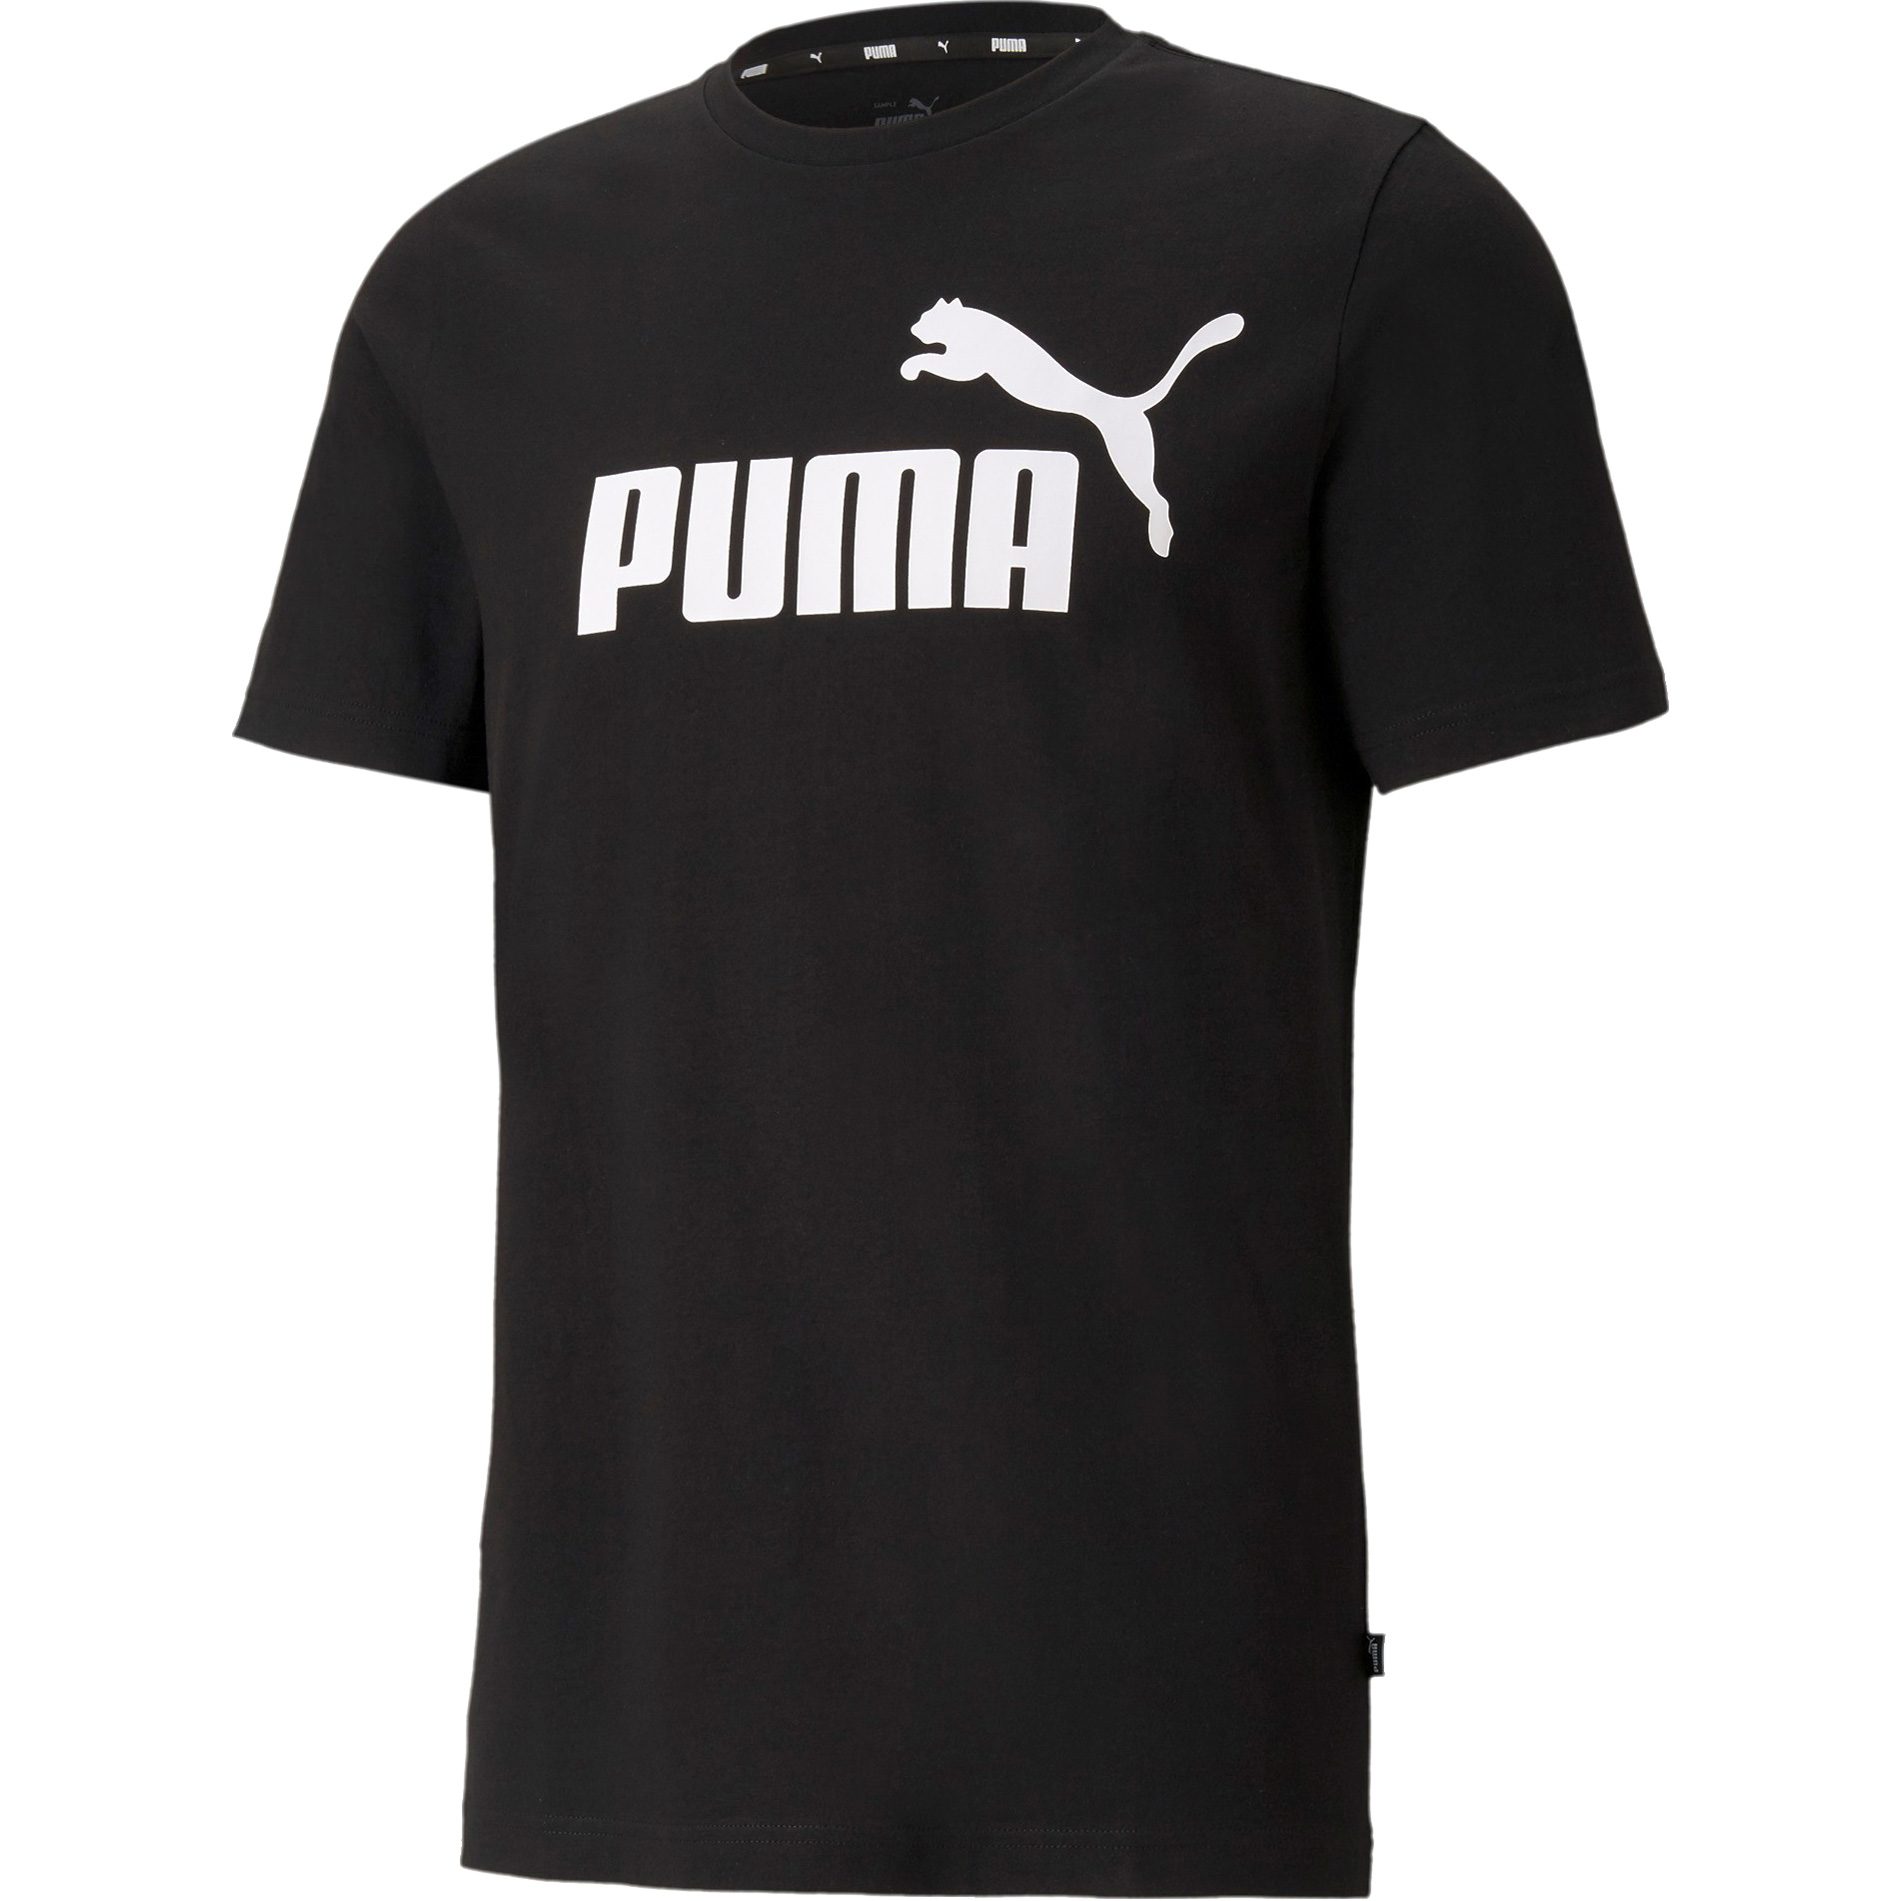 Puma - Essentials Sport T-Shirt Shop black puma Logo at Bittl Men